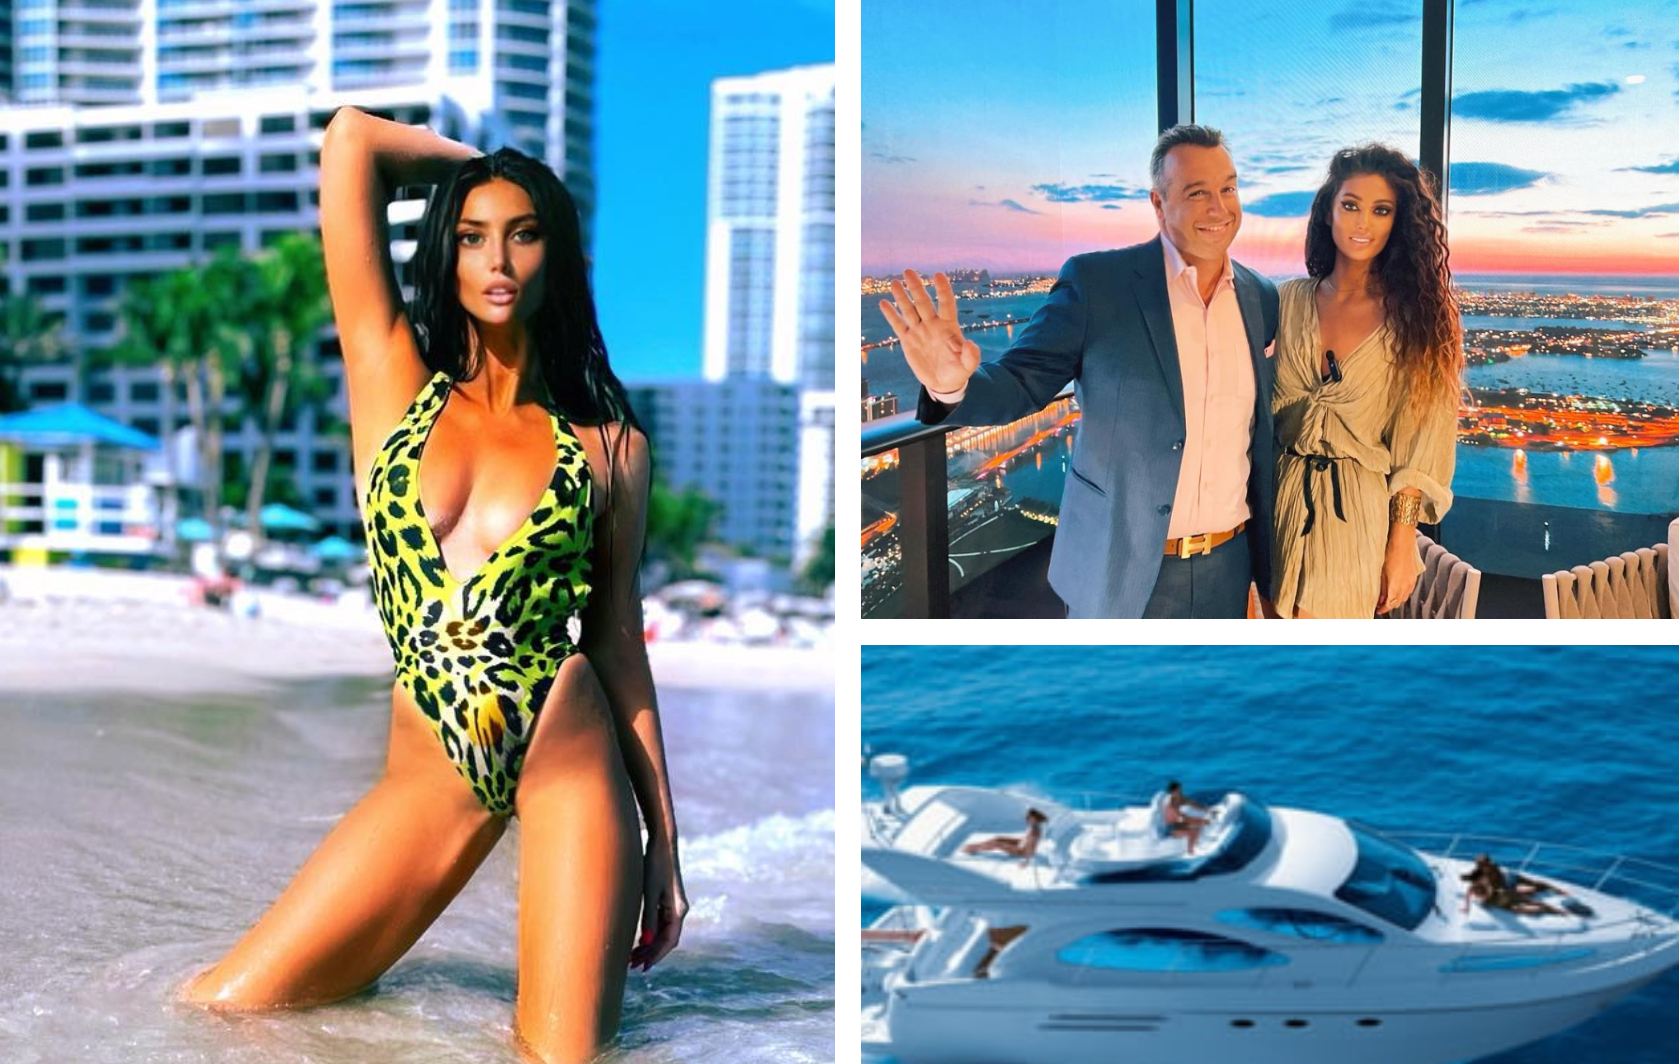 Claudia Pavel, fosta Cream, ne face cunoștință cu ”crema” miliardarilor de origine română din Miami, cei care ”au avut achiziții și de 500 milioane $” Unde își face debutul în televiziune